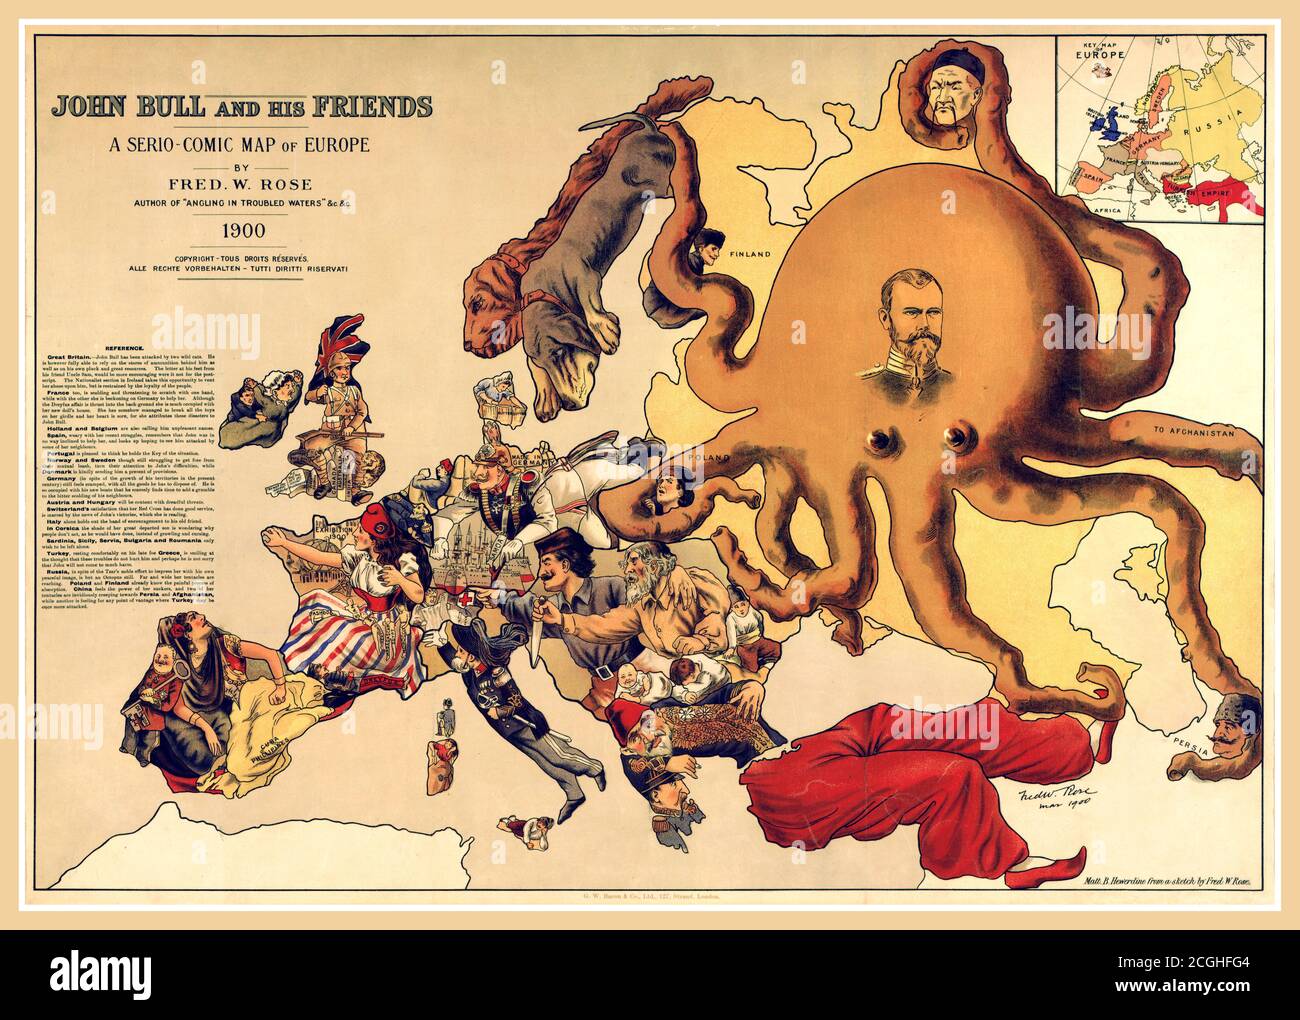 Carta politica d'epoca 1900, 'John Bull e i suoi amici' di Frederick Rose dei Paesi d'Europa, conosciuta come la carta dell'Octopus dalla presenza scoscesa dell'Impero russo raffigurata come un polpo massiccio, i cui tentacoli si estendono verso l'Europa. Foto Stock